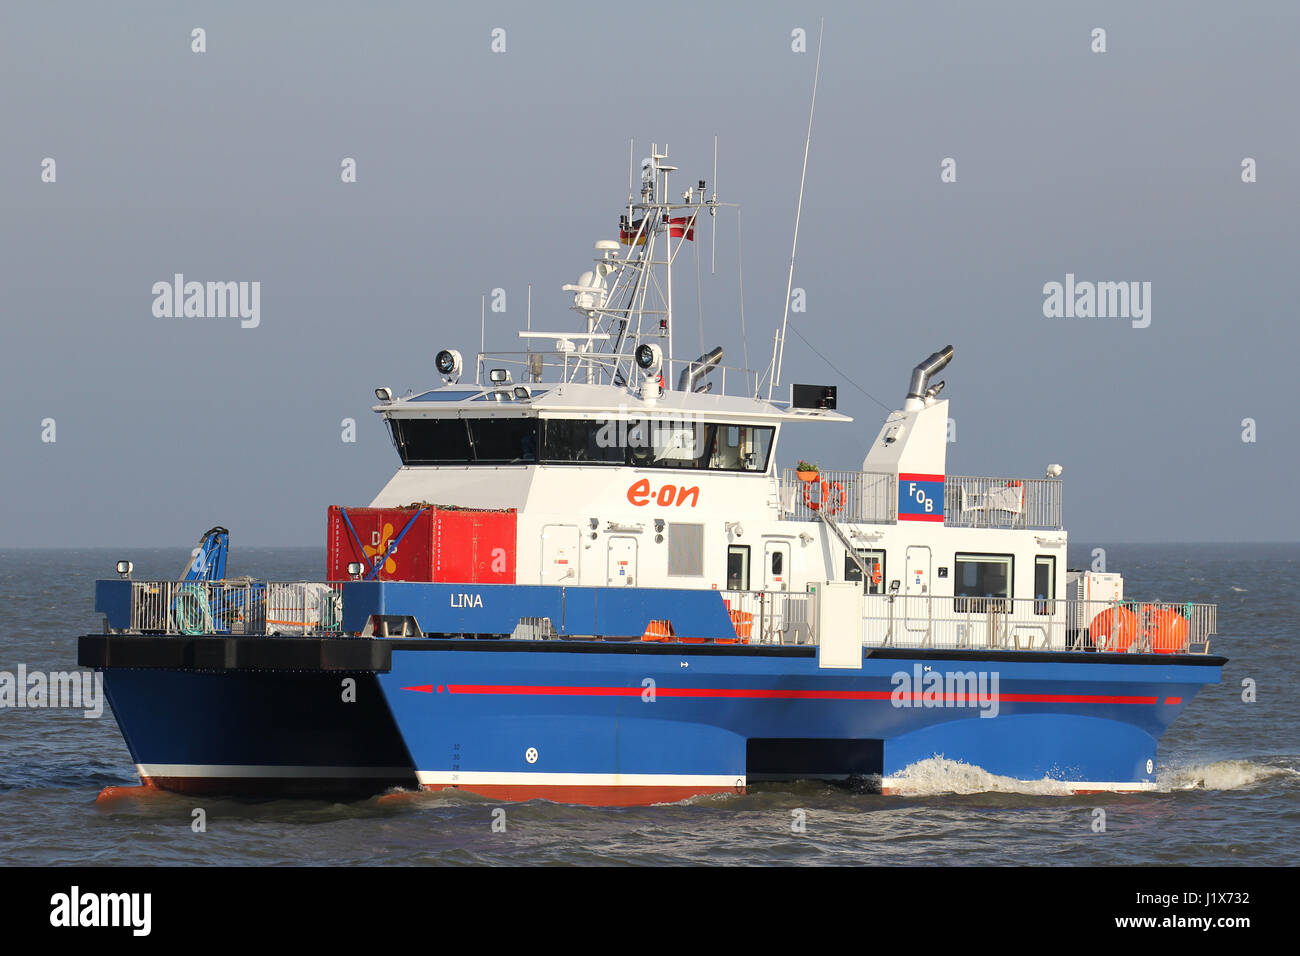 Crew Transfer Schiff LINA an der Elbe. Die Katze-SCHNEISE zartere LINA ist zur Bedienung von E.ON in der deutschen Nordsee. Stockfoto